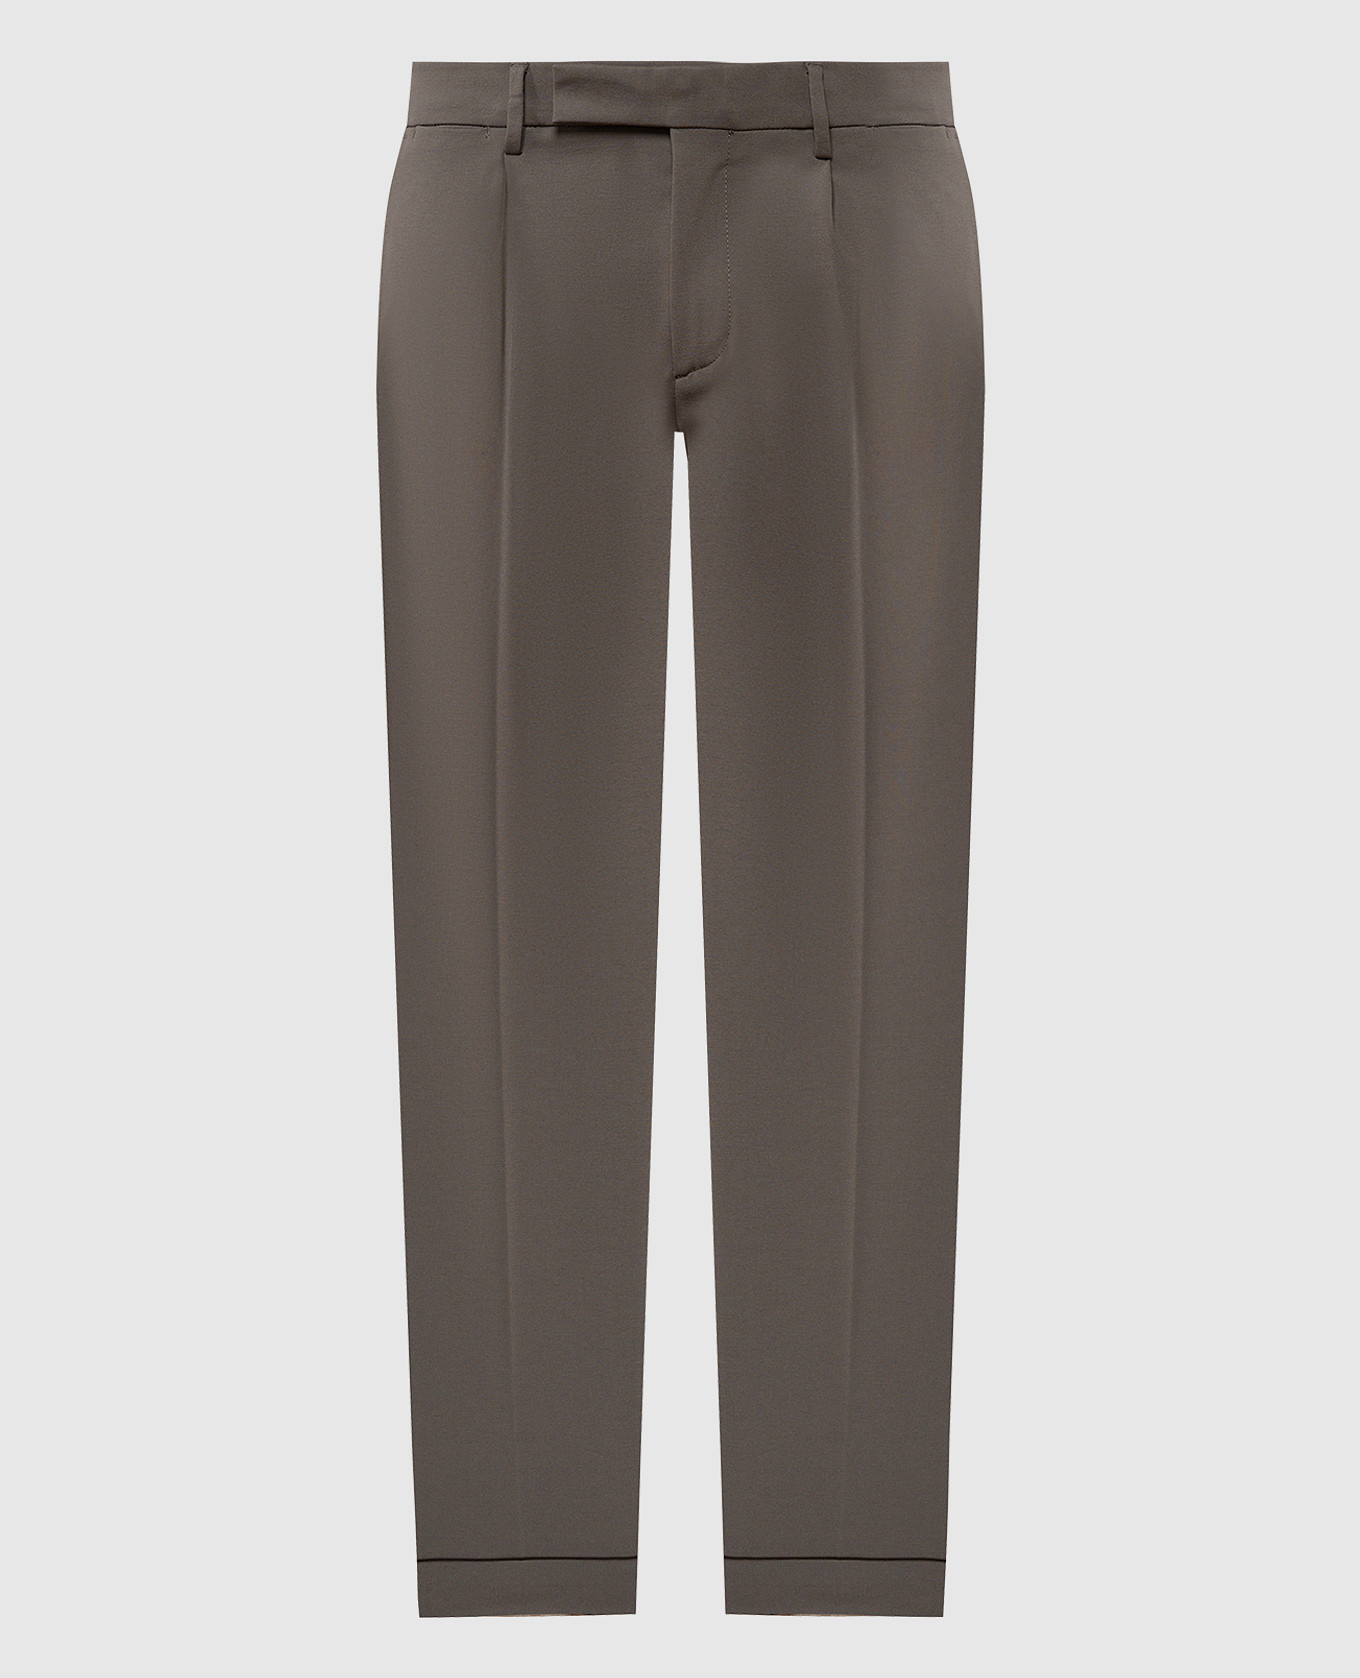 NIGEL brown pants